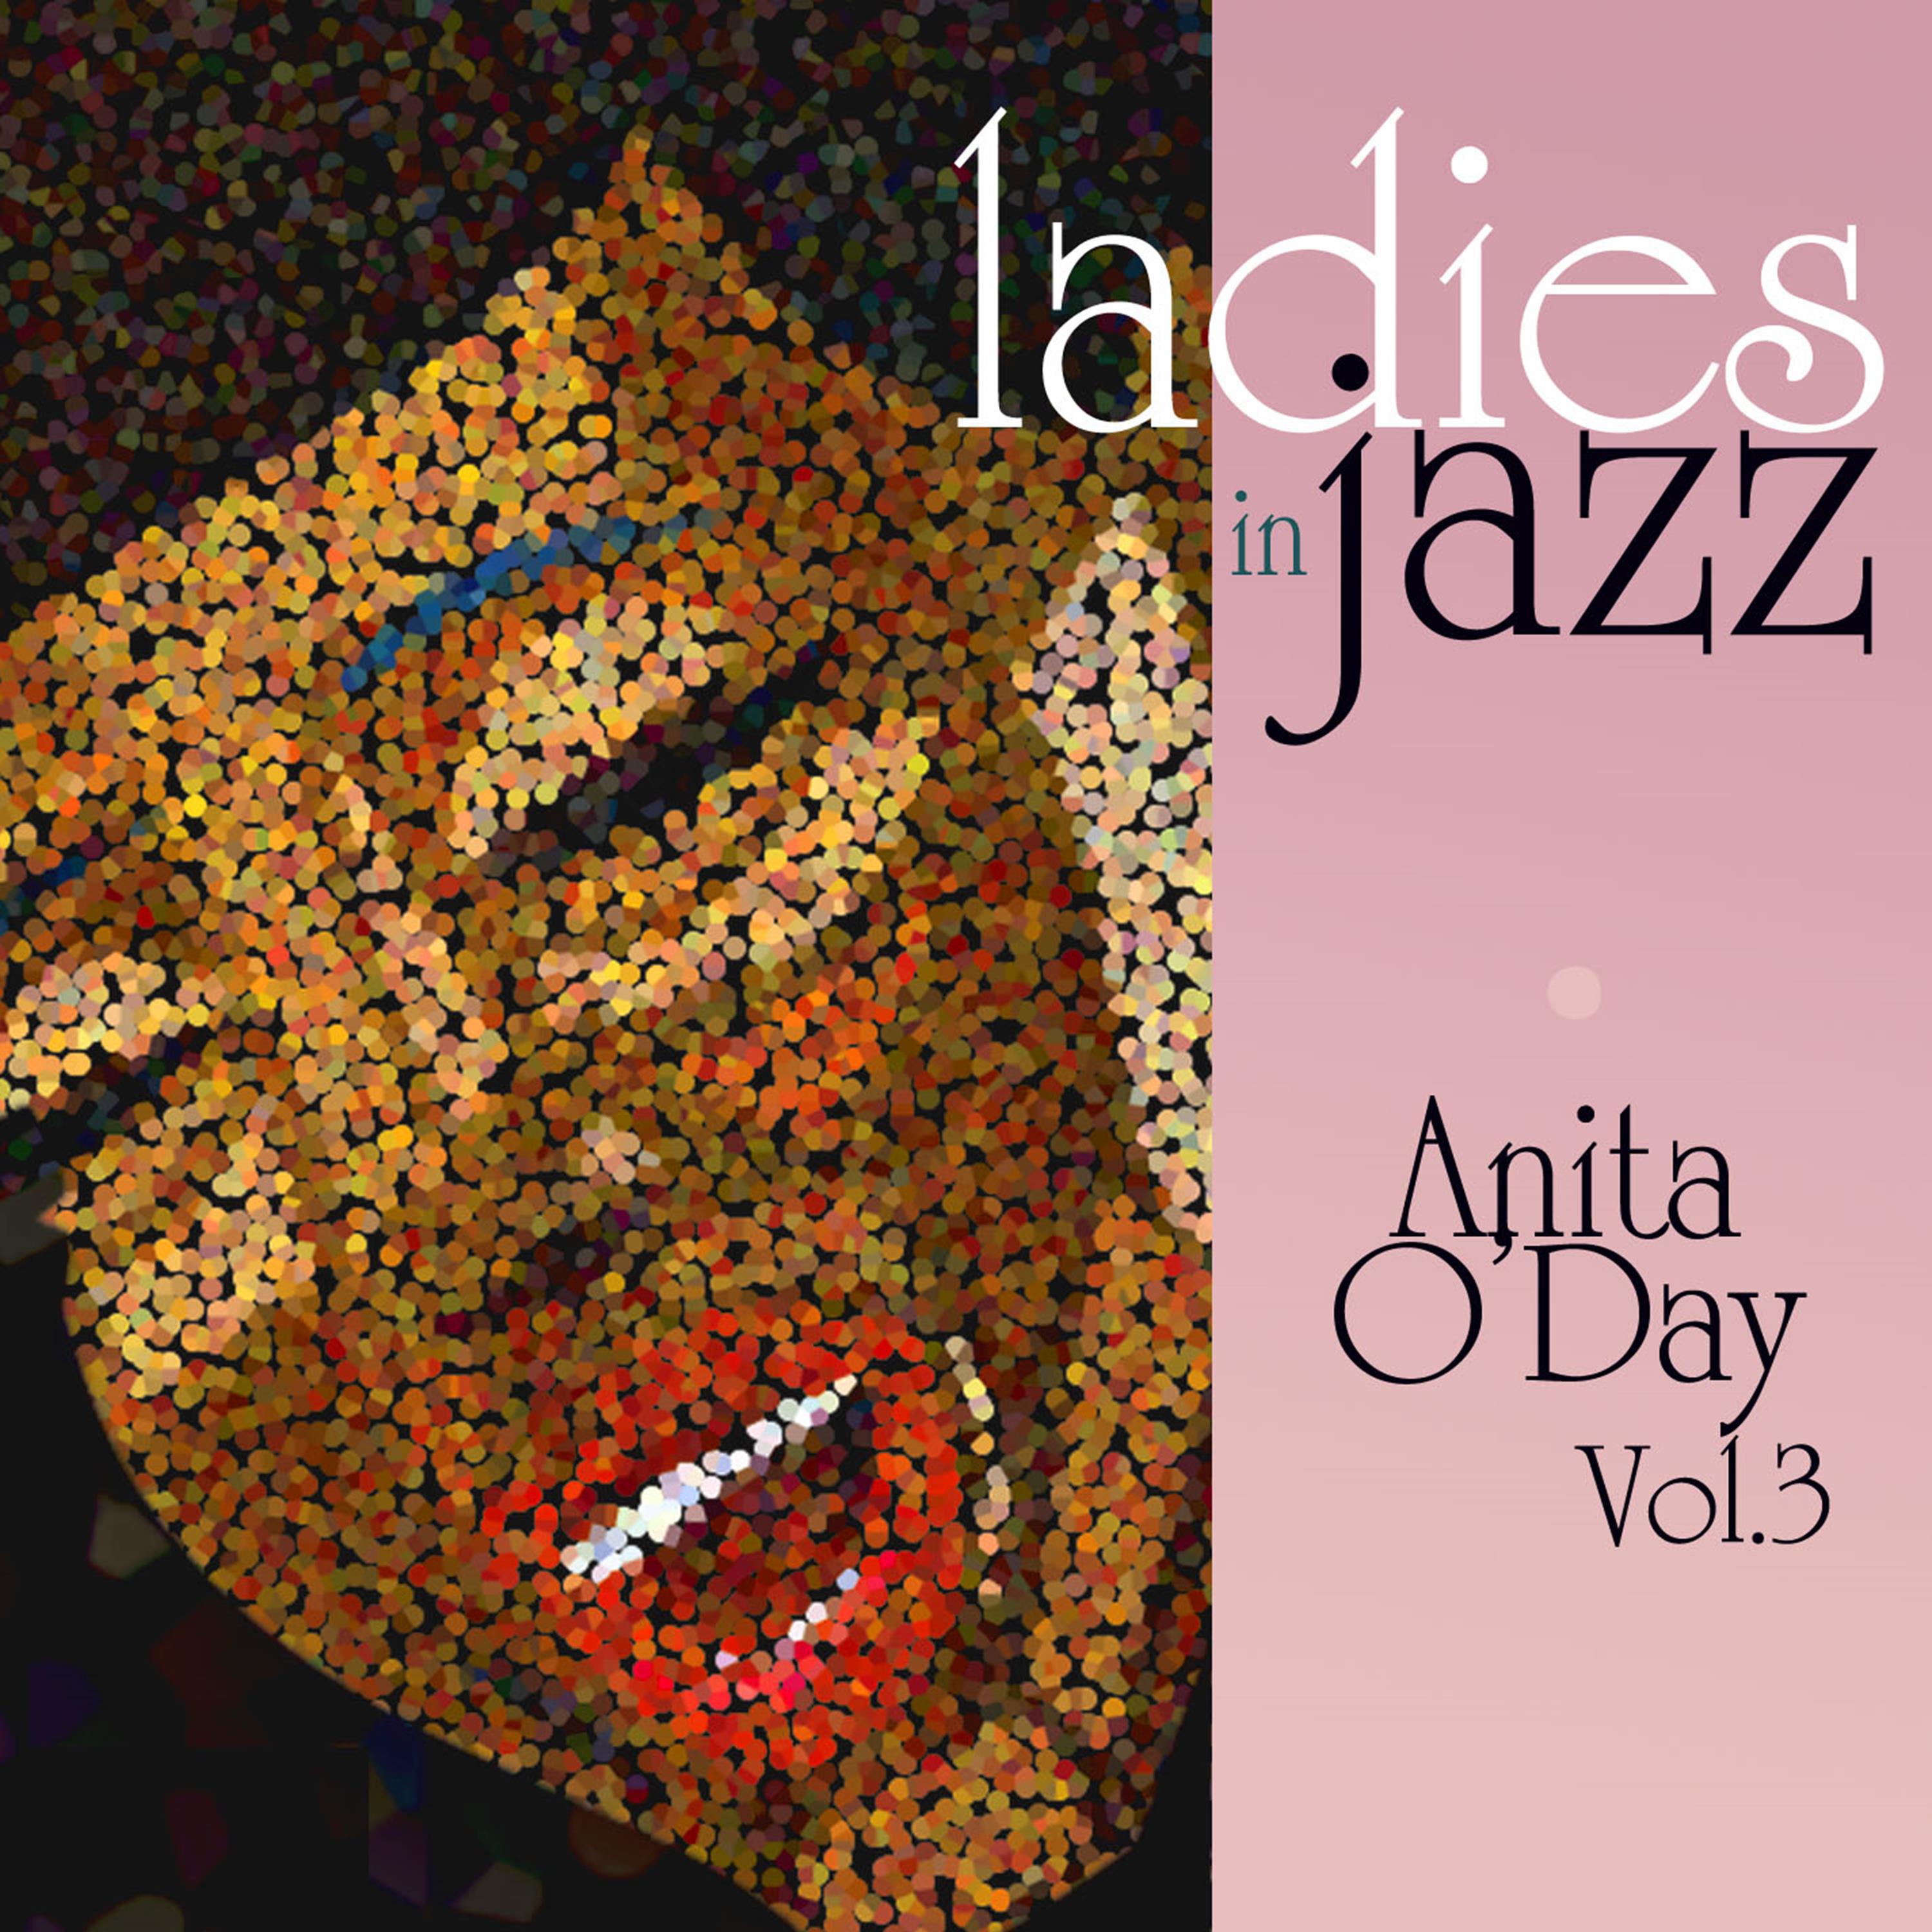 Ladies in Jazz - Anita O'Day, Vol. 3